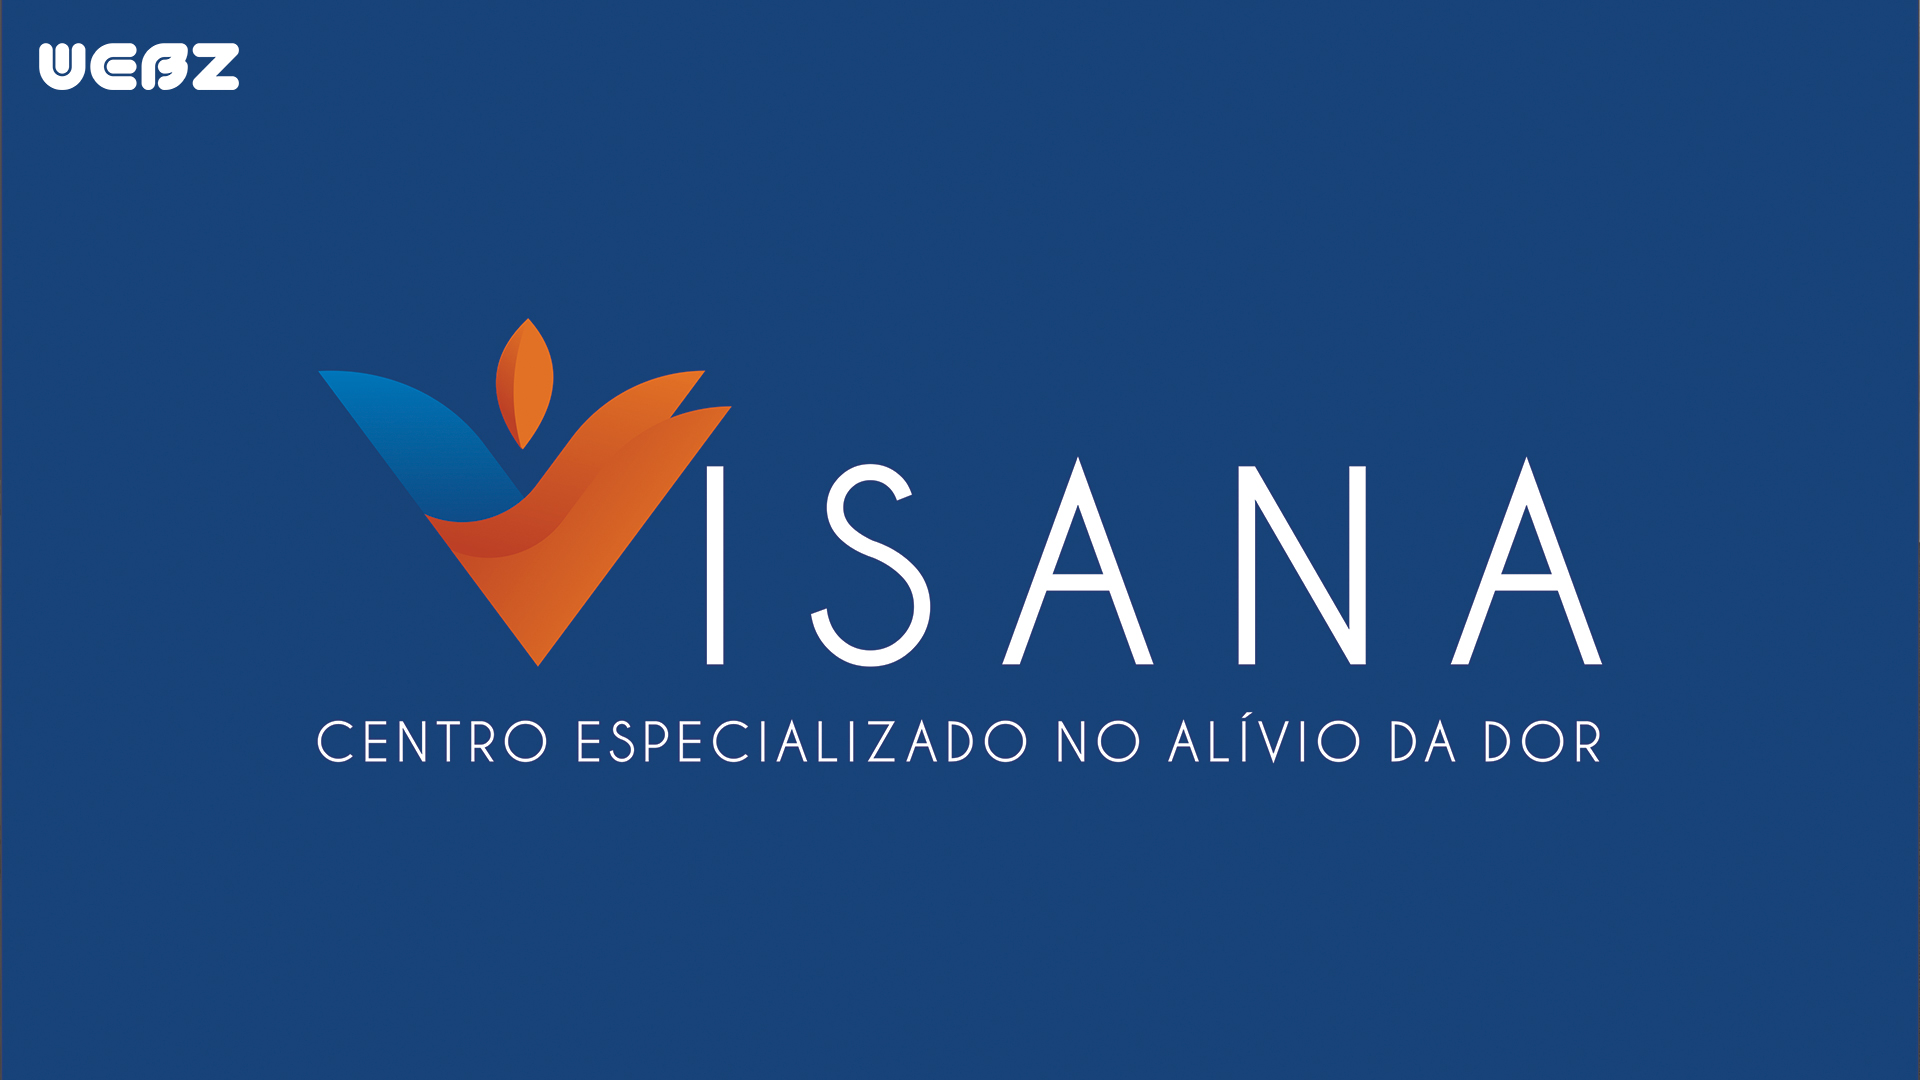 WEBZ - Clínica Visana - Criação de logotipo